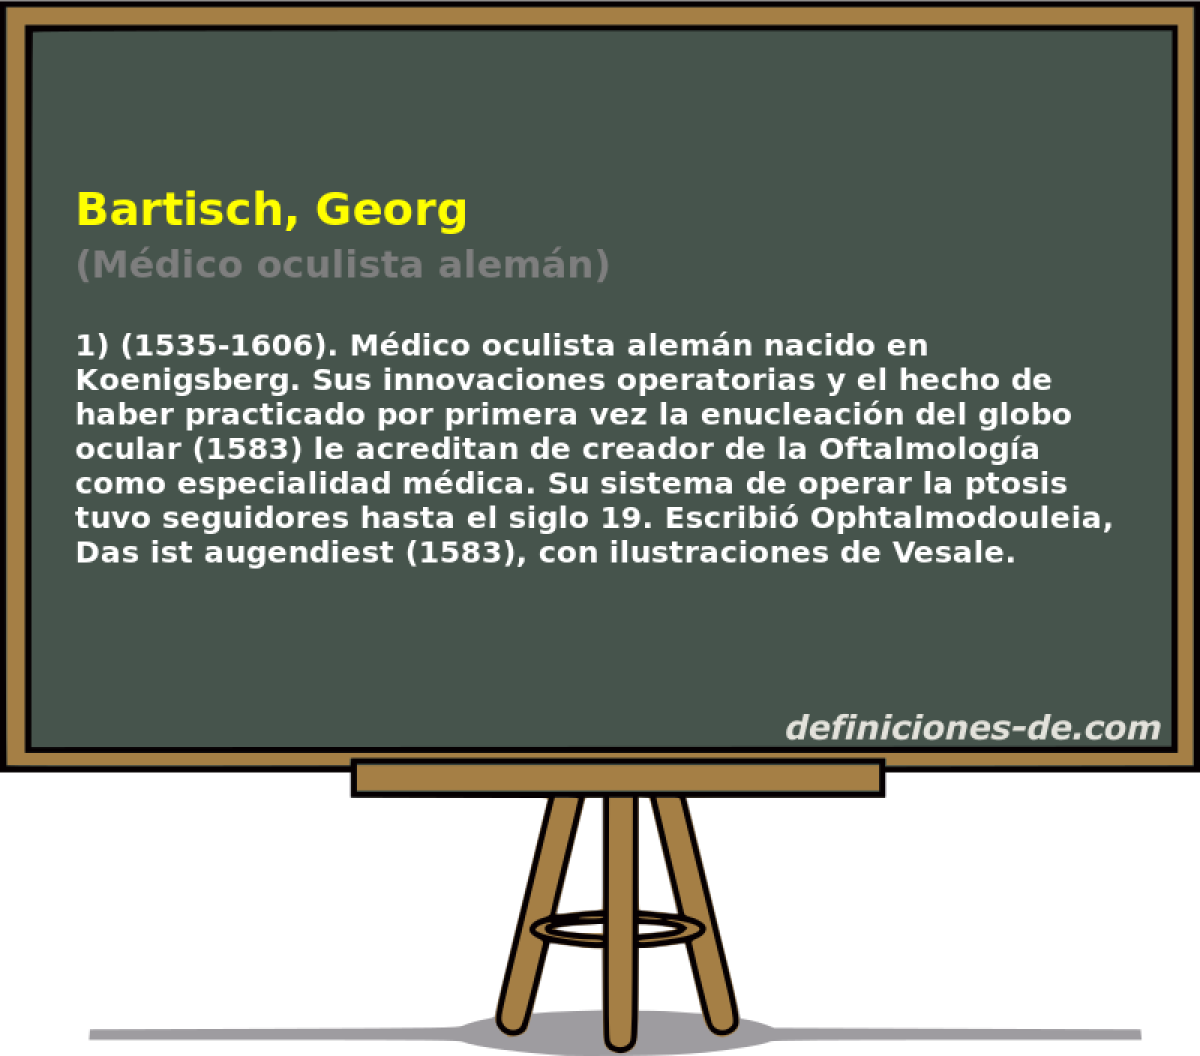 Bartisch, Georg (Mdico oculista alemn)